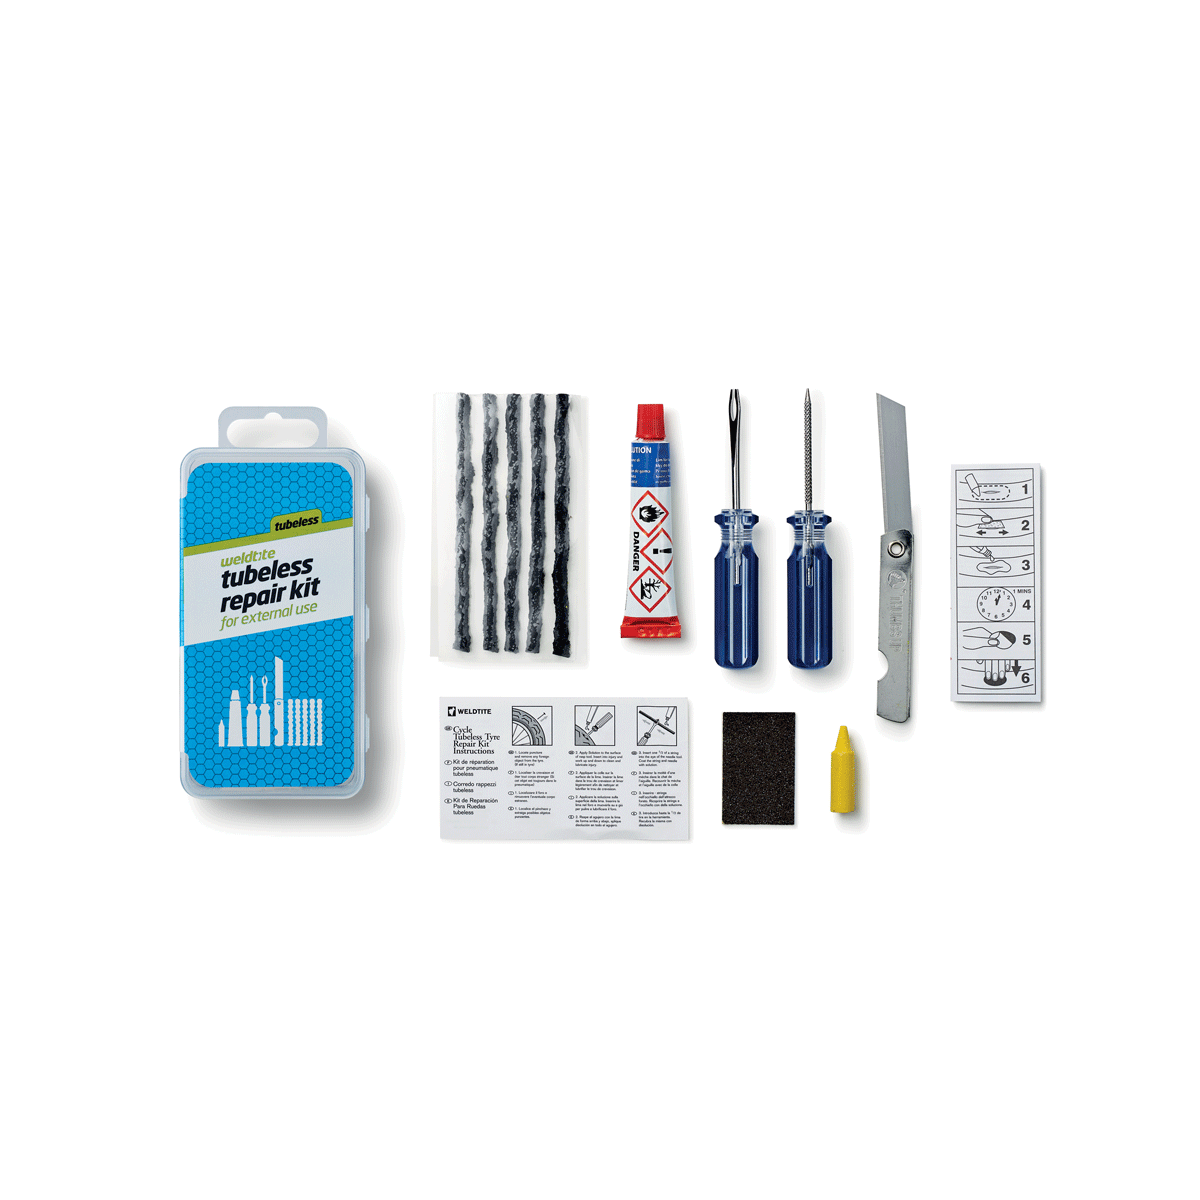 weldtite tubeless repair kit